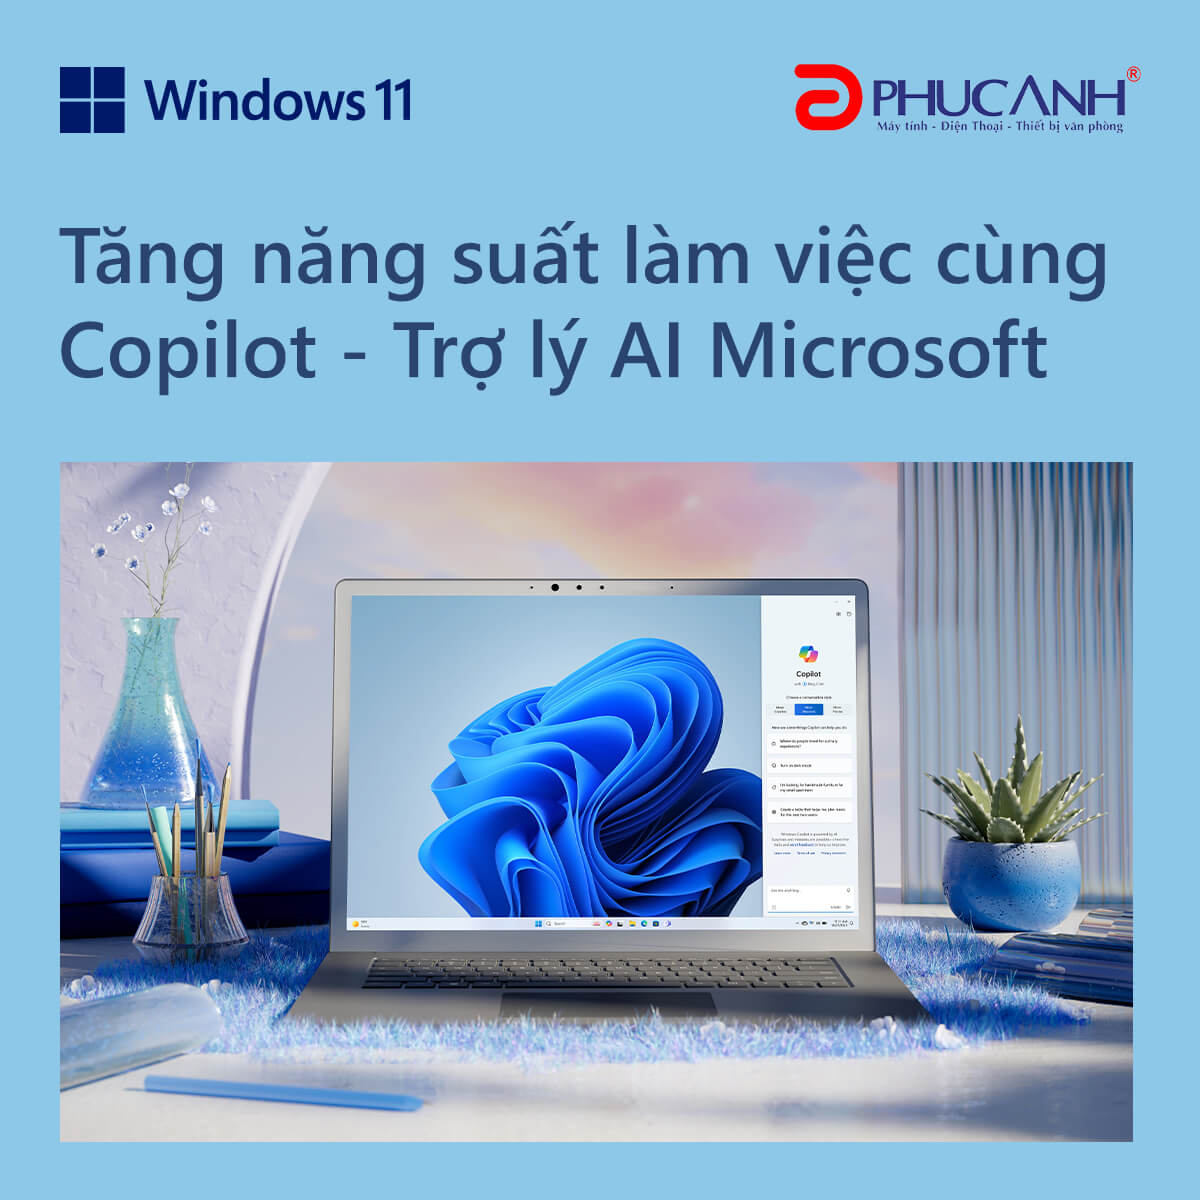 Copilot - Trợ lý AI Microsoft